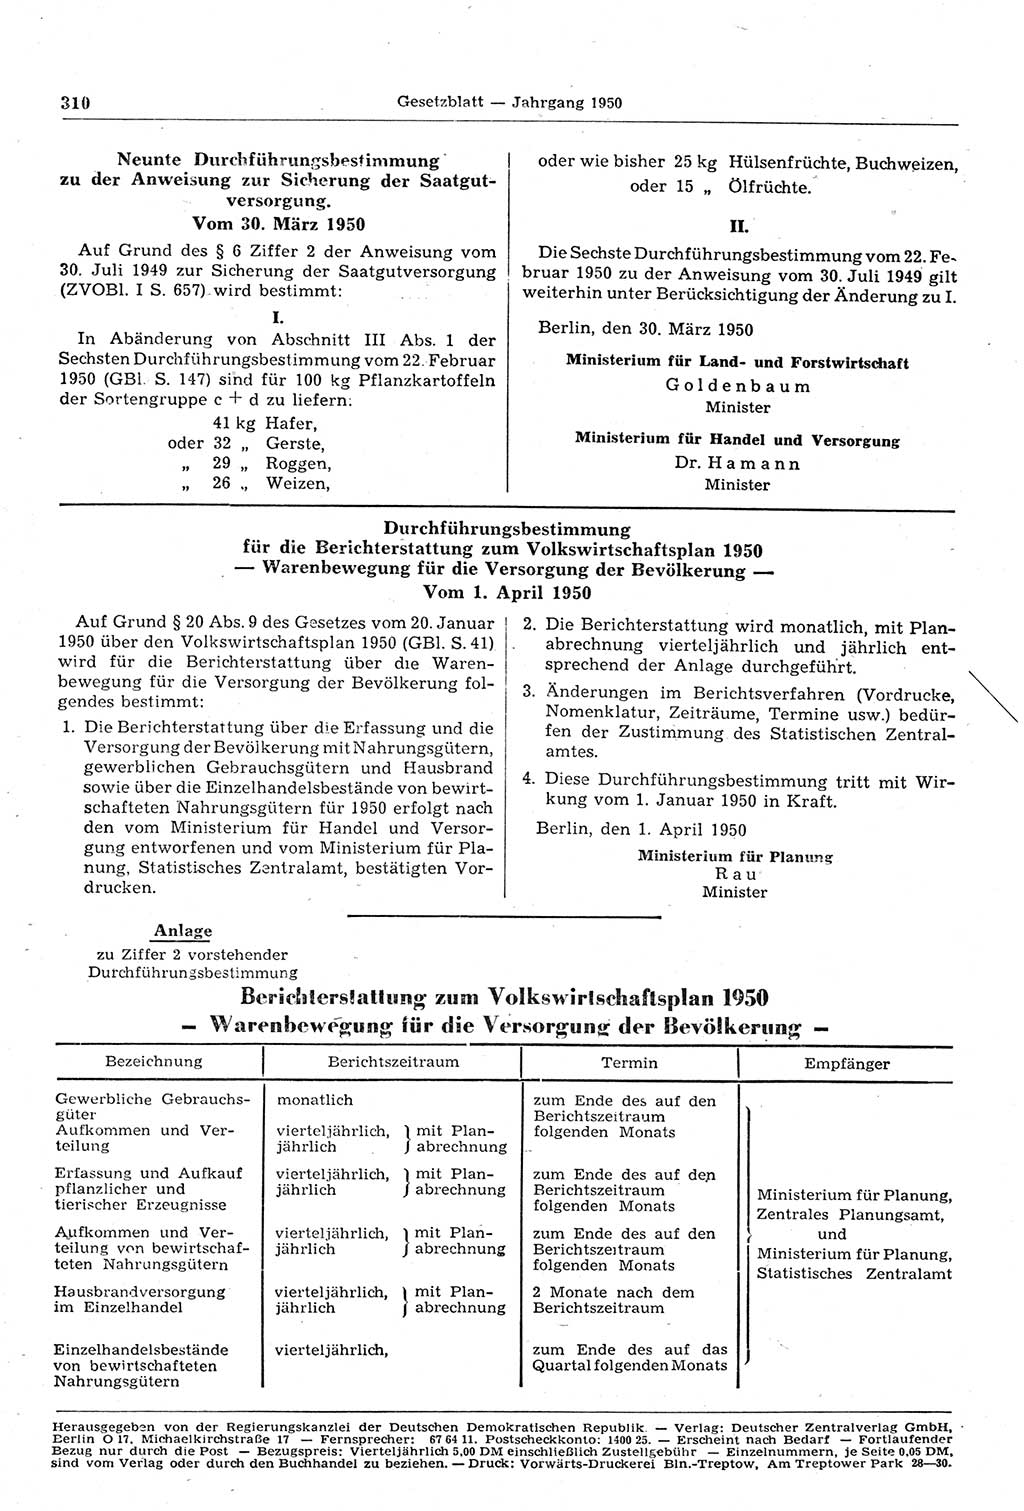 Gesetzblatt (GBl.) der Deutschen Demokratischen Republik (DDR) 1950, Seite 310 (GBl. DDR 1950, S. 310)